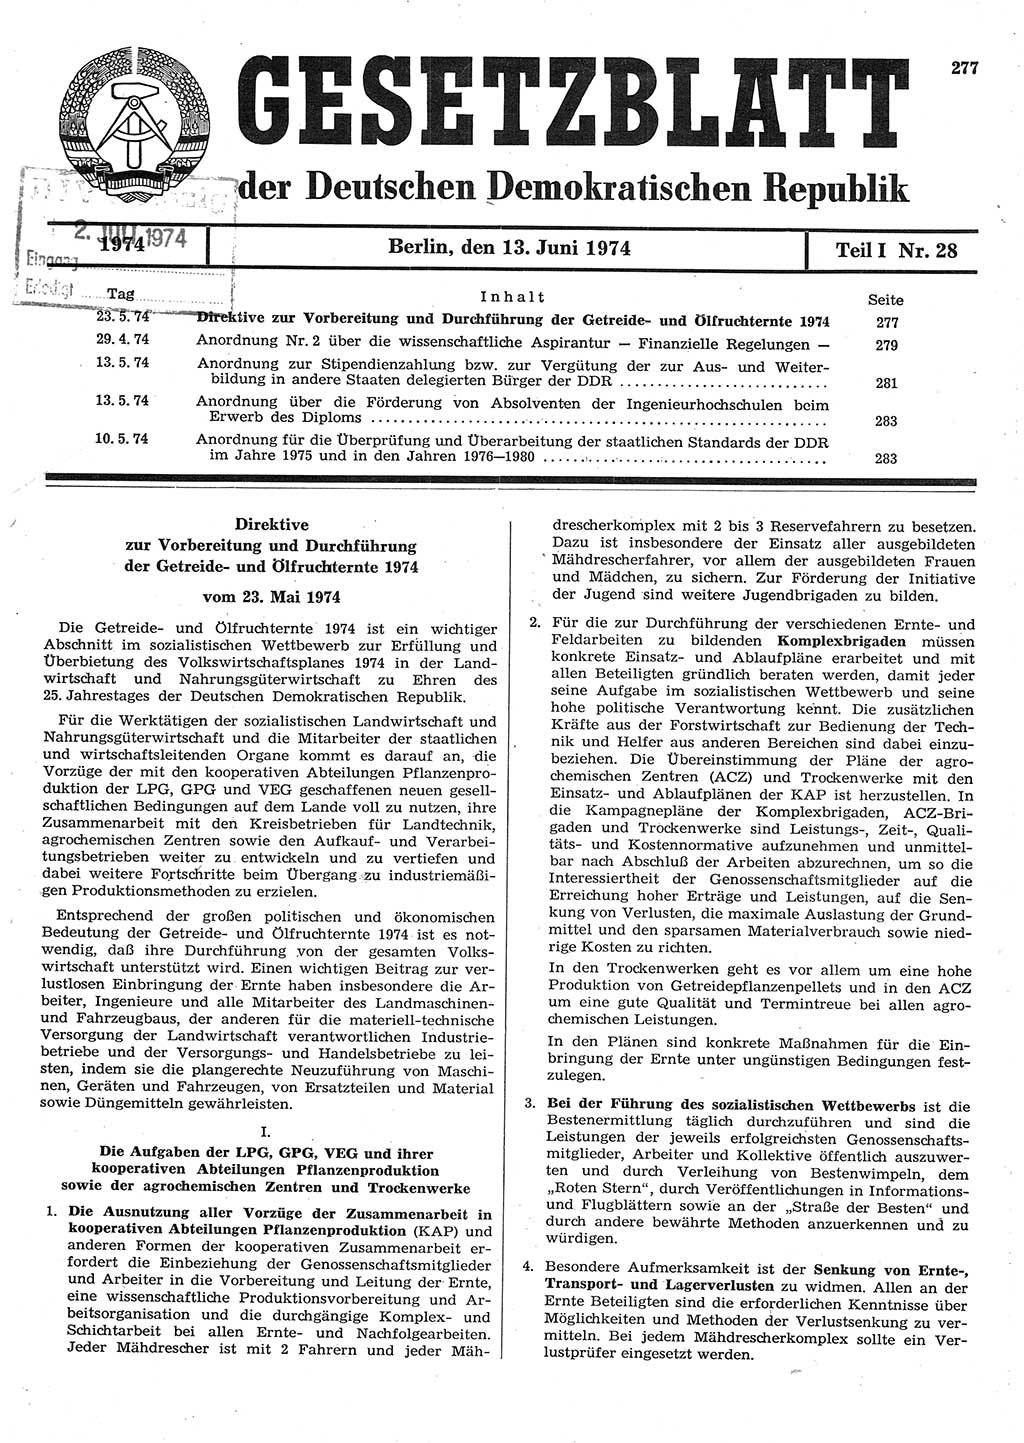 Gesetzblatt (GBl.) der Deutschen Demokratischen Republik (DDR) Teil Ⅰ 1974, Seite 277 (GBl. DDR Ⅰ 1974, S. 277)